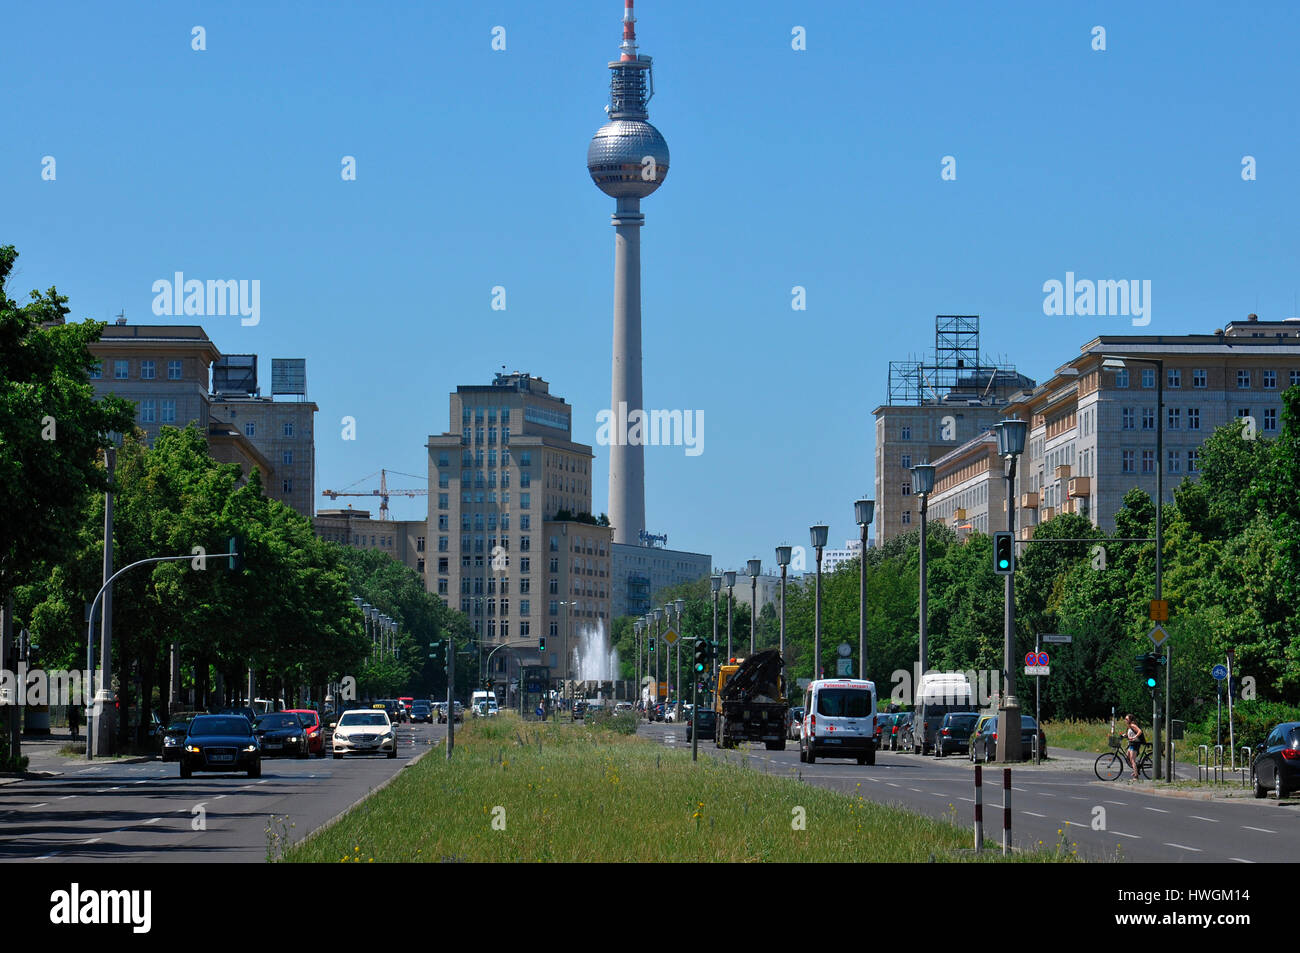 Fernsehturm, Karl-Marx-Allee, Friedrichshain, Berlin, Deutschland Stock Photo